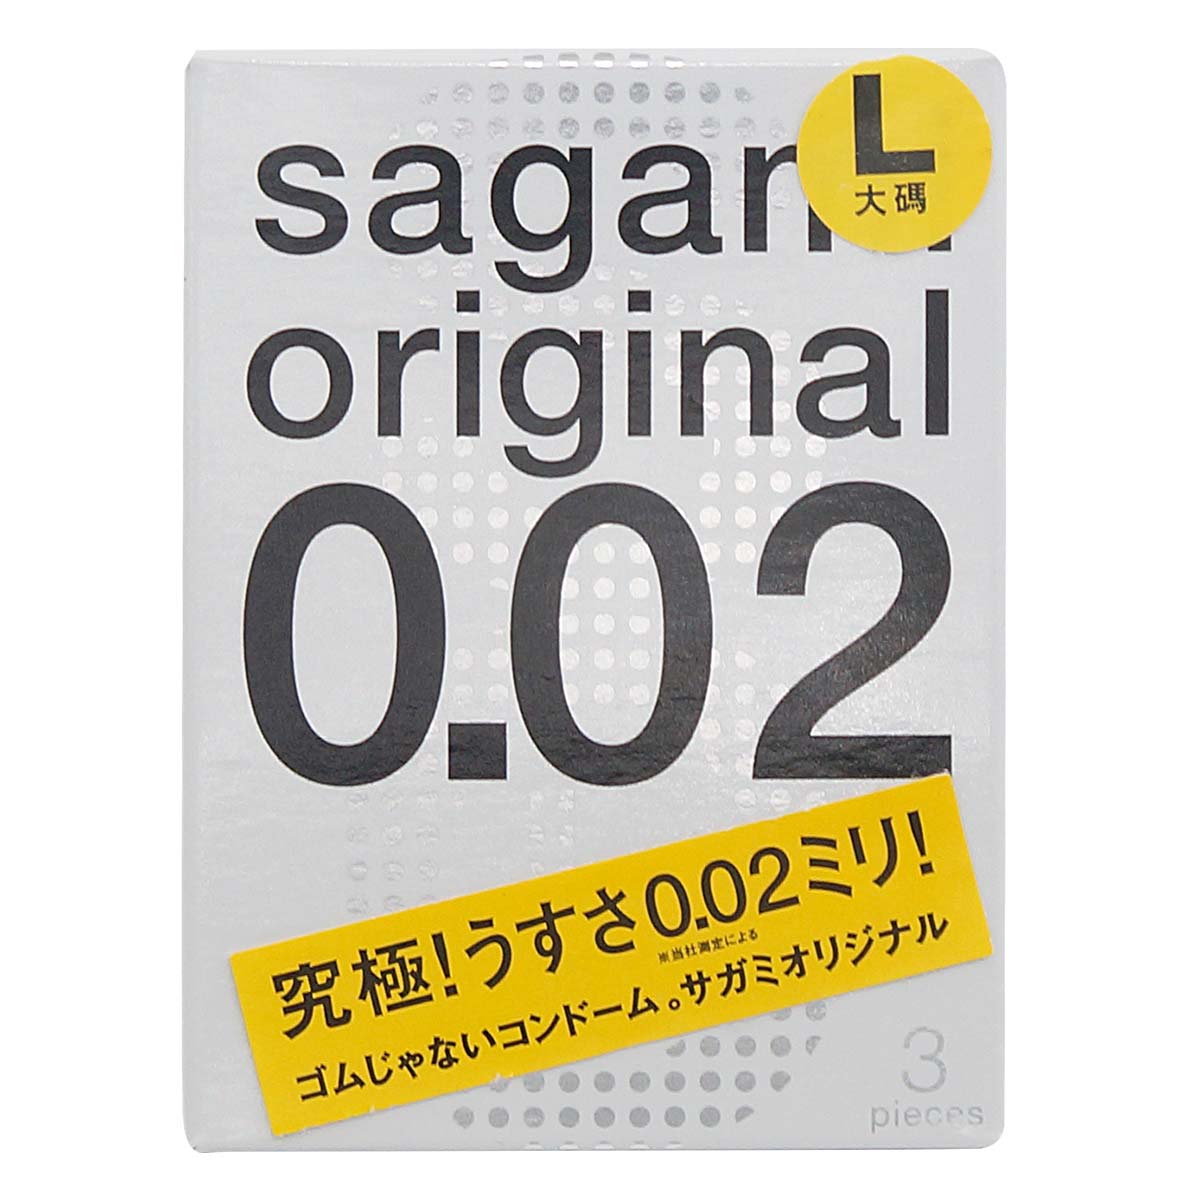 Sagami Original 0.02 L-size 58mm 3's Pack PU Condom-p_2